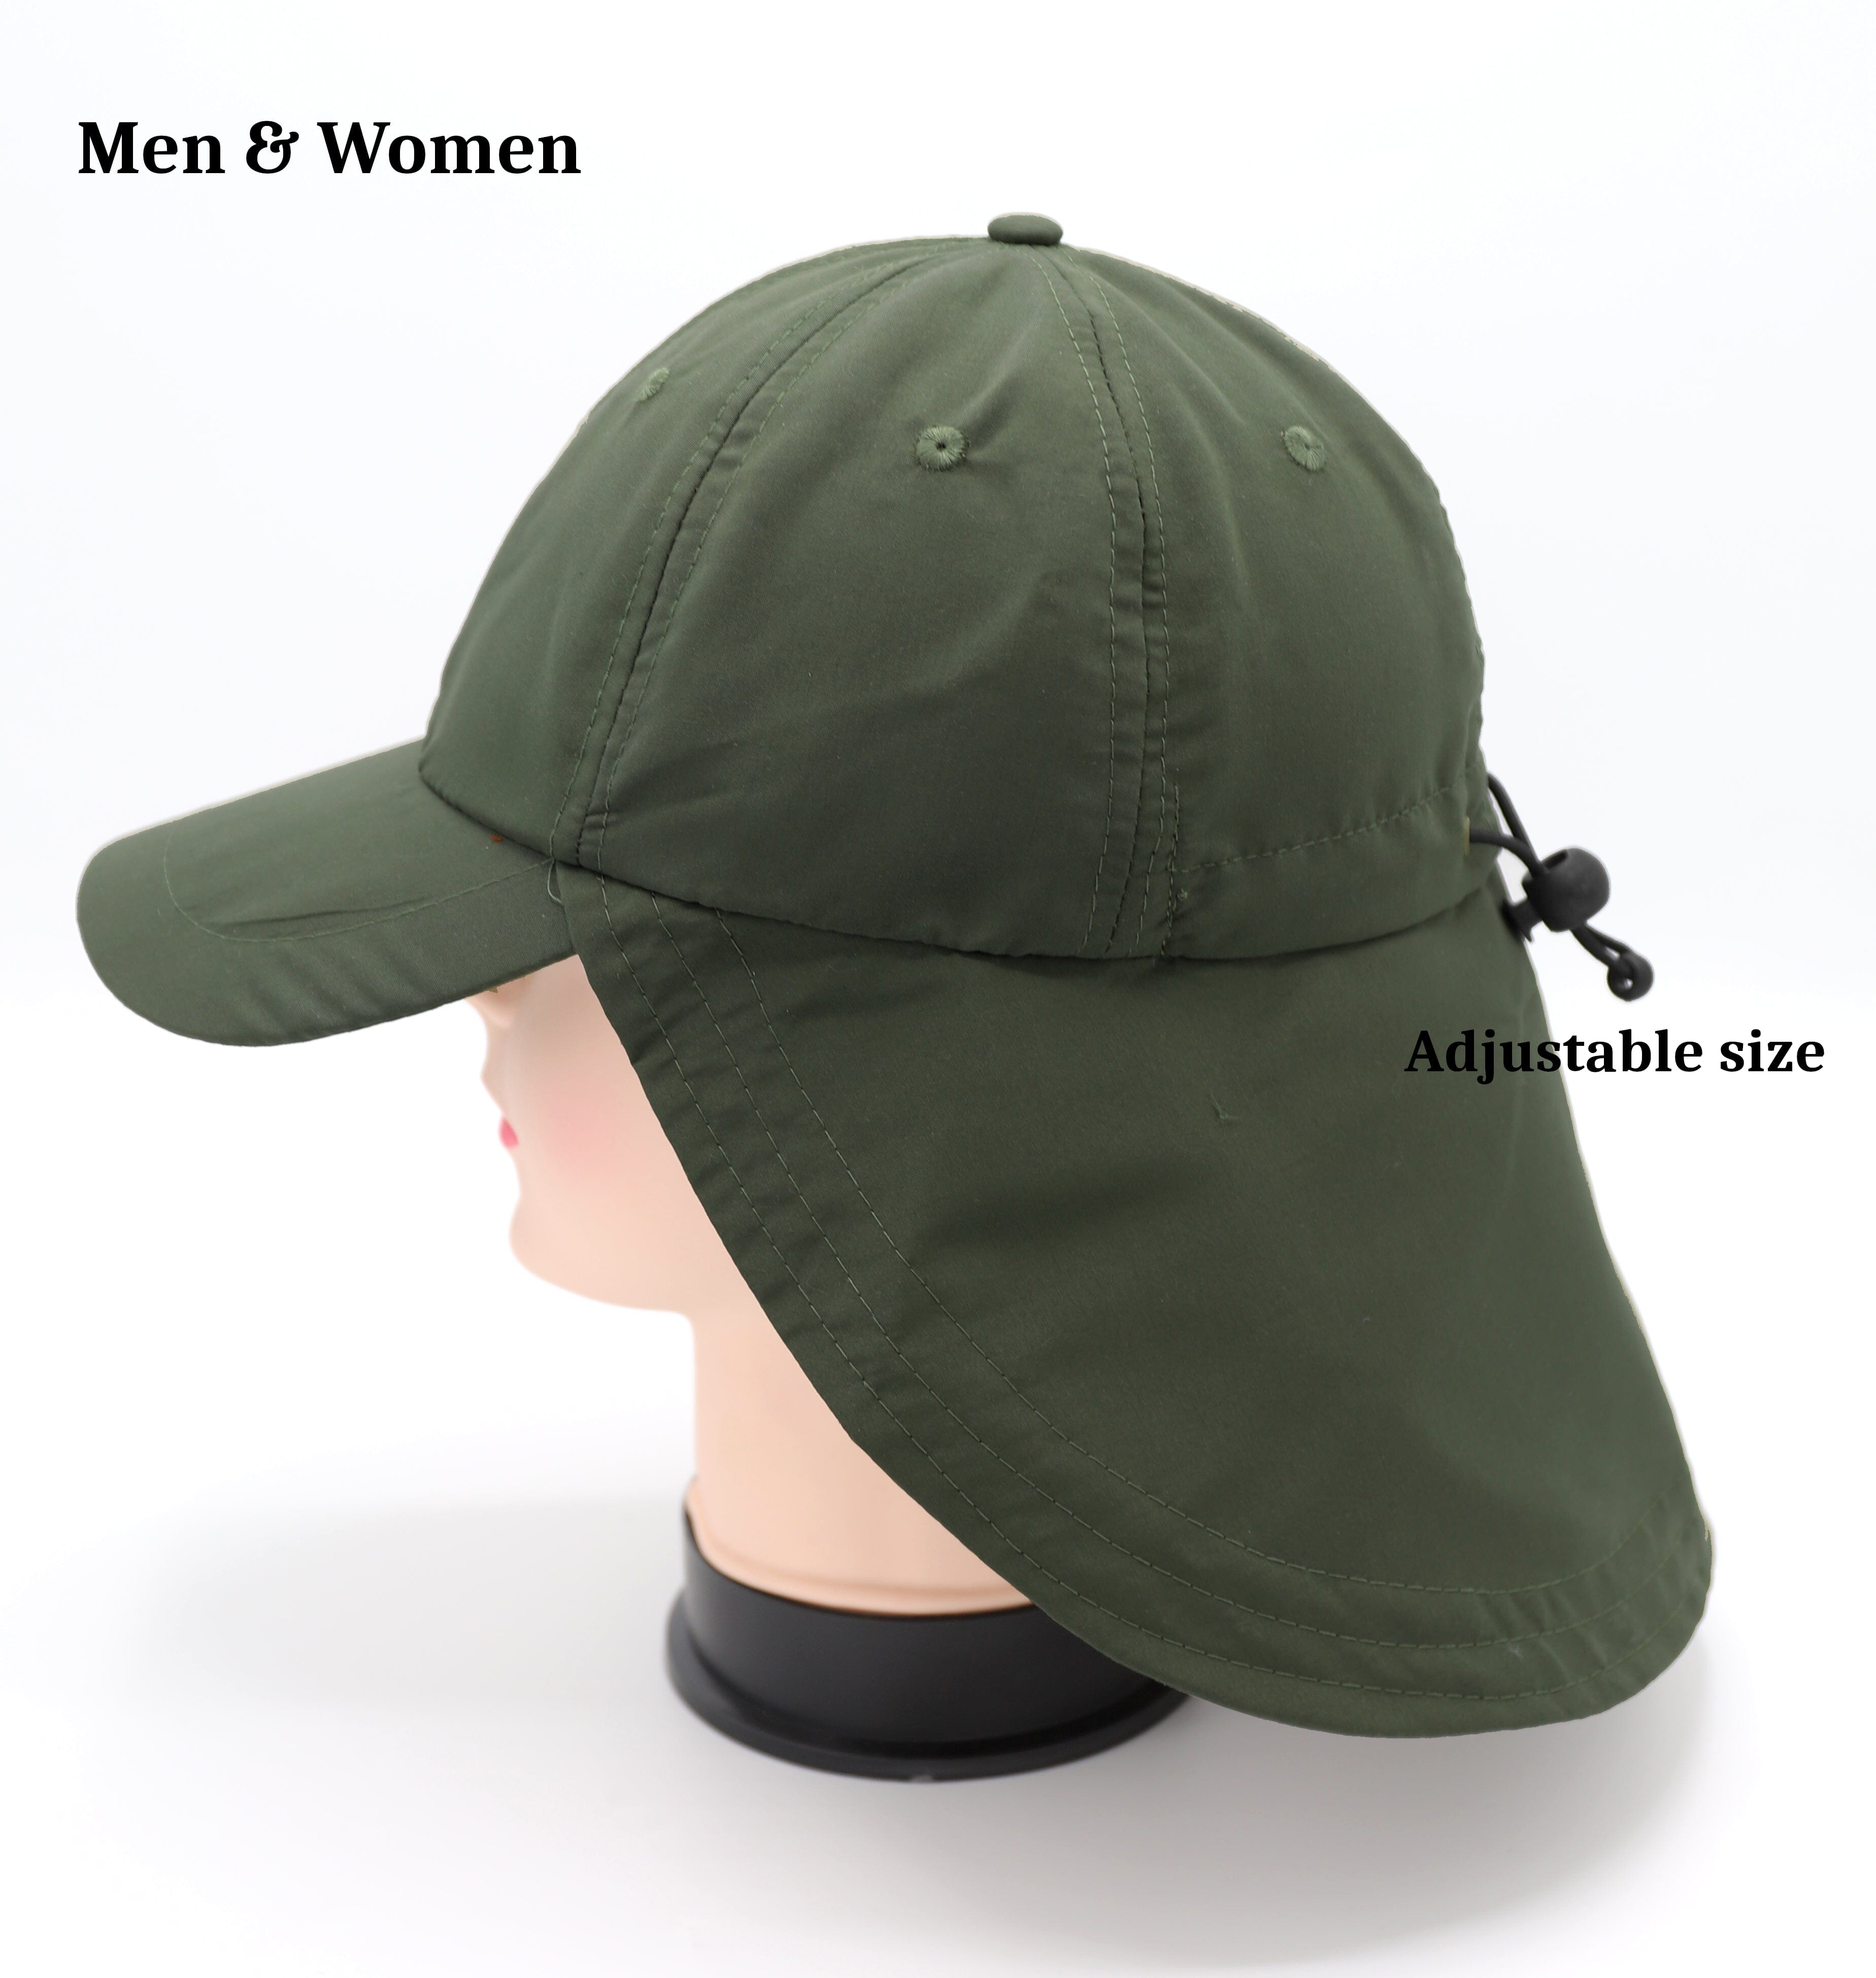 Casquette Visière Réglable Antisolaire Anti-UV chapeau 